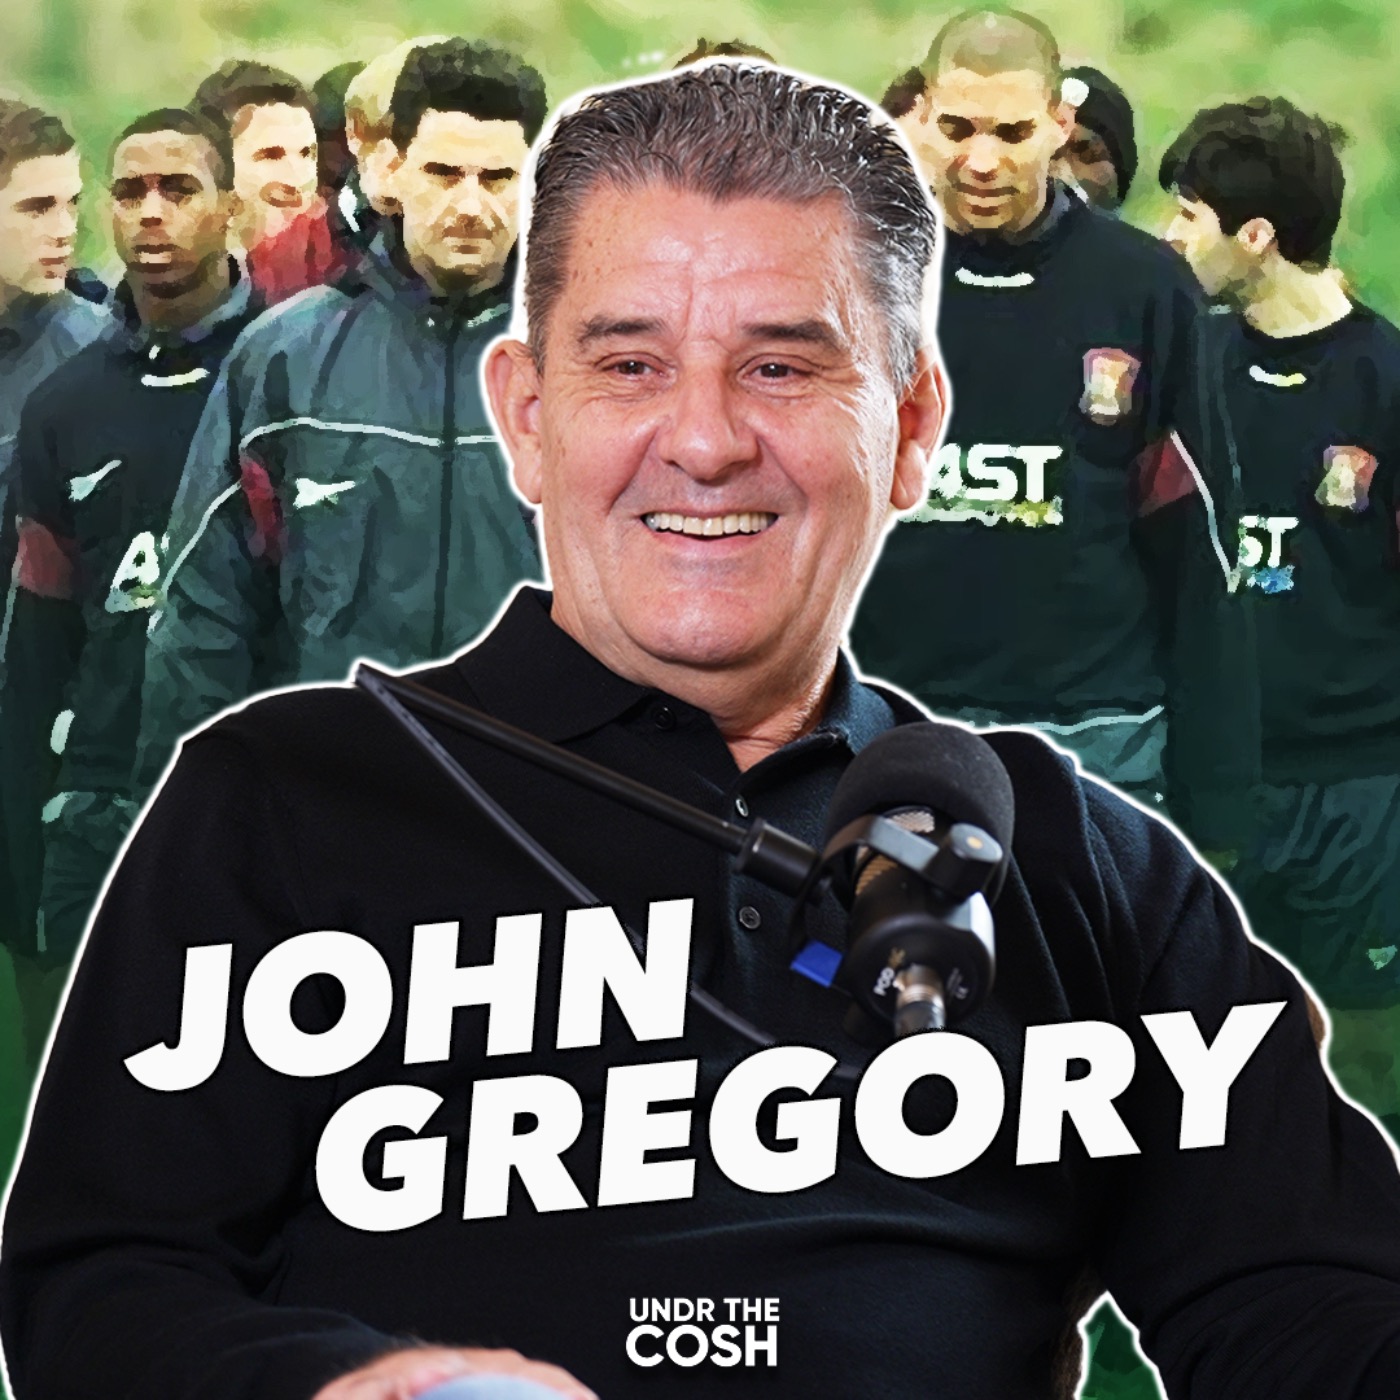 John Gregory | "If I'd Had A Gun I Would Have Shot Him"